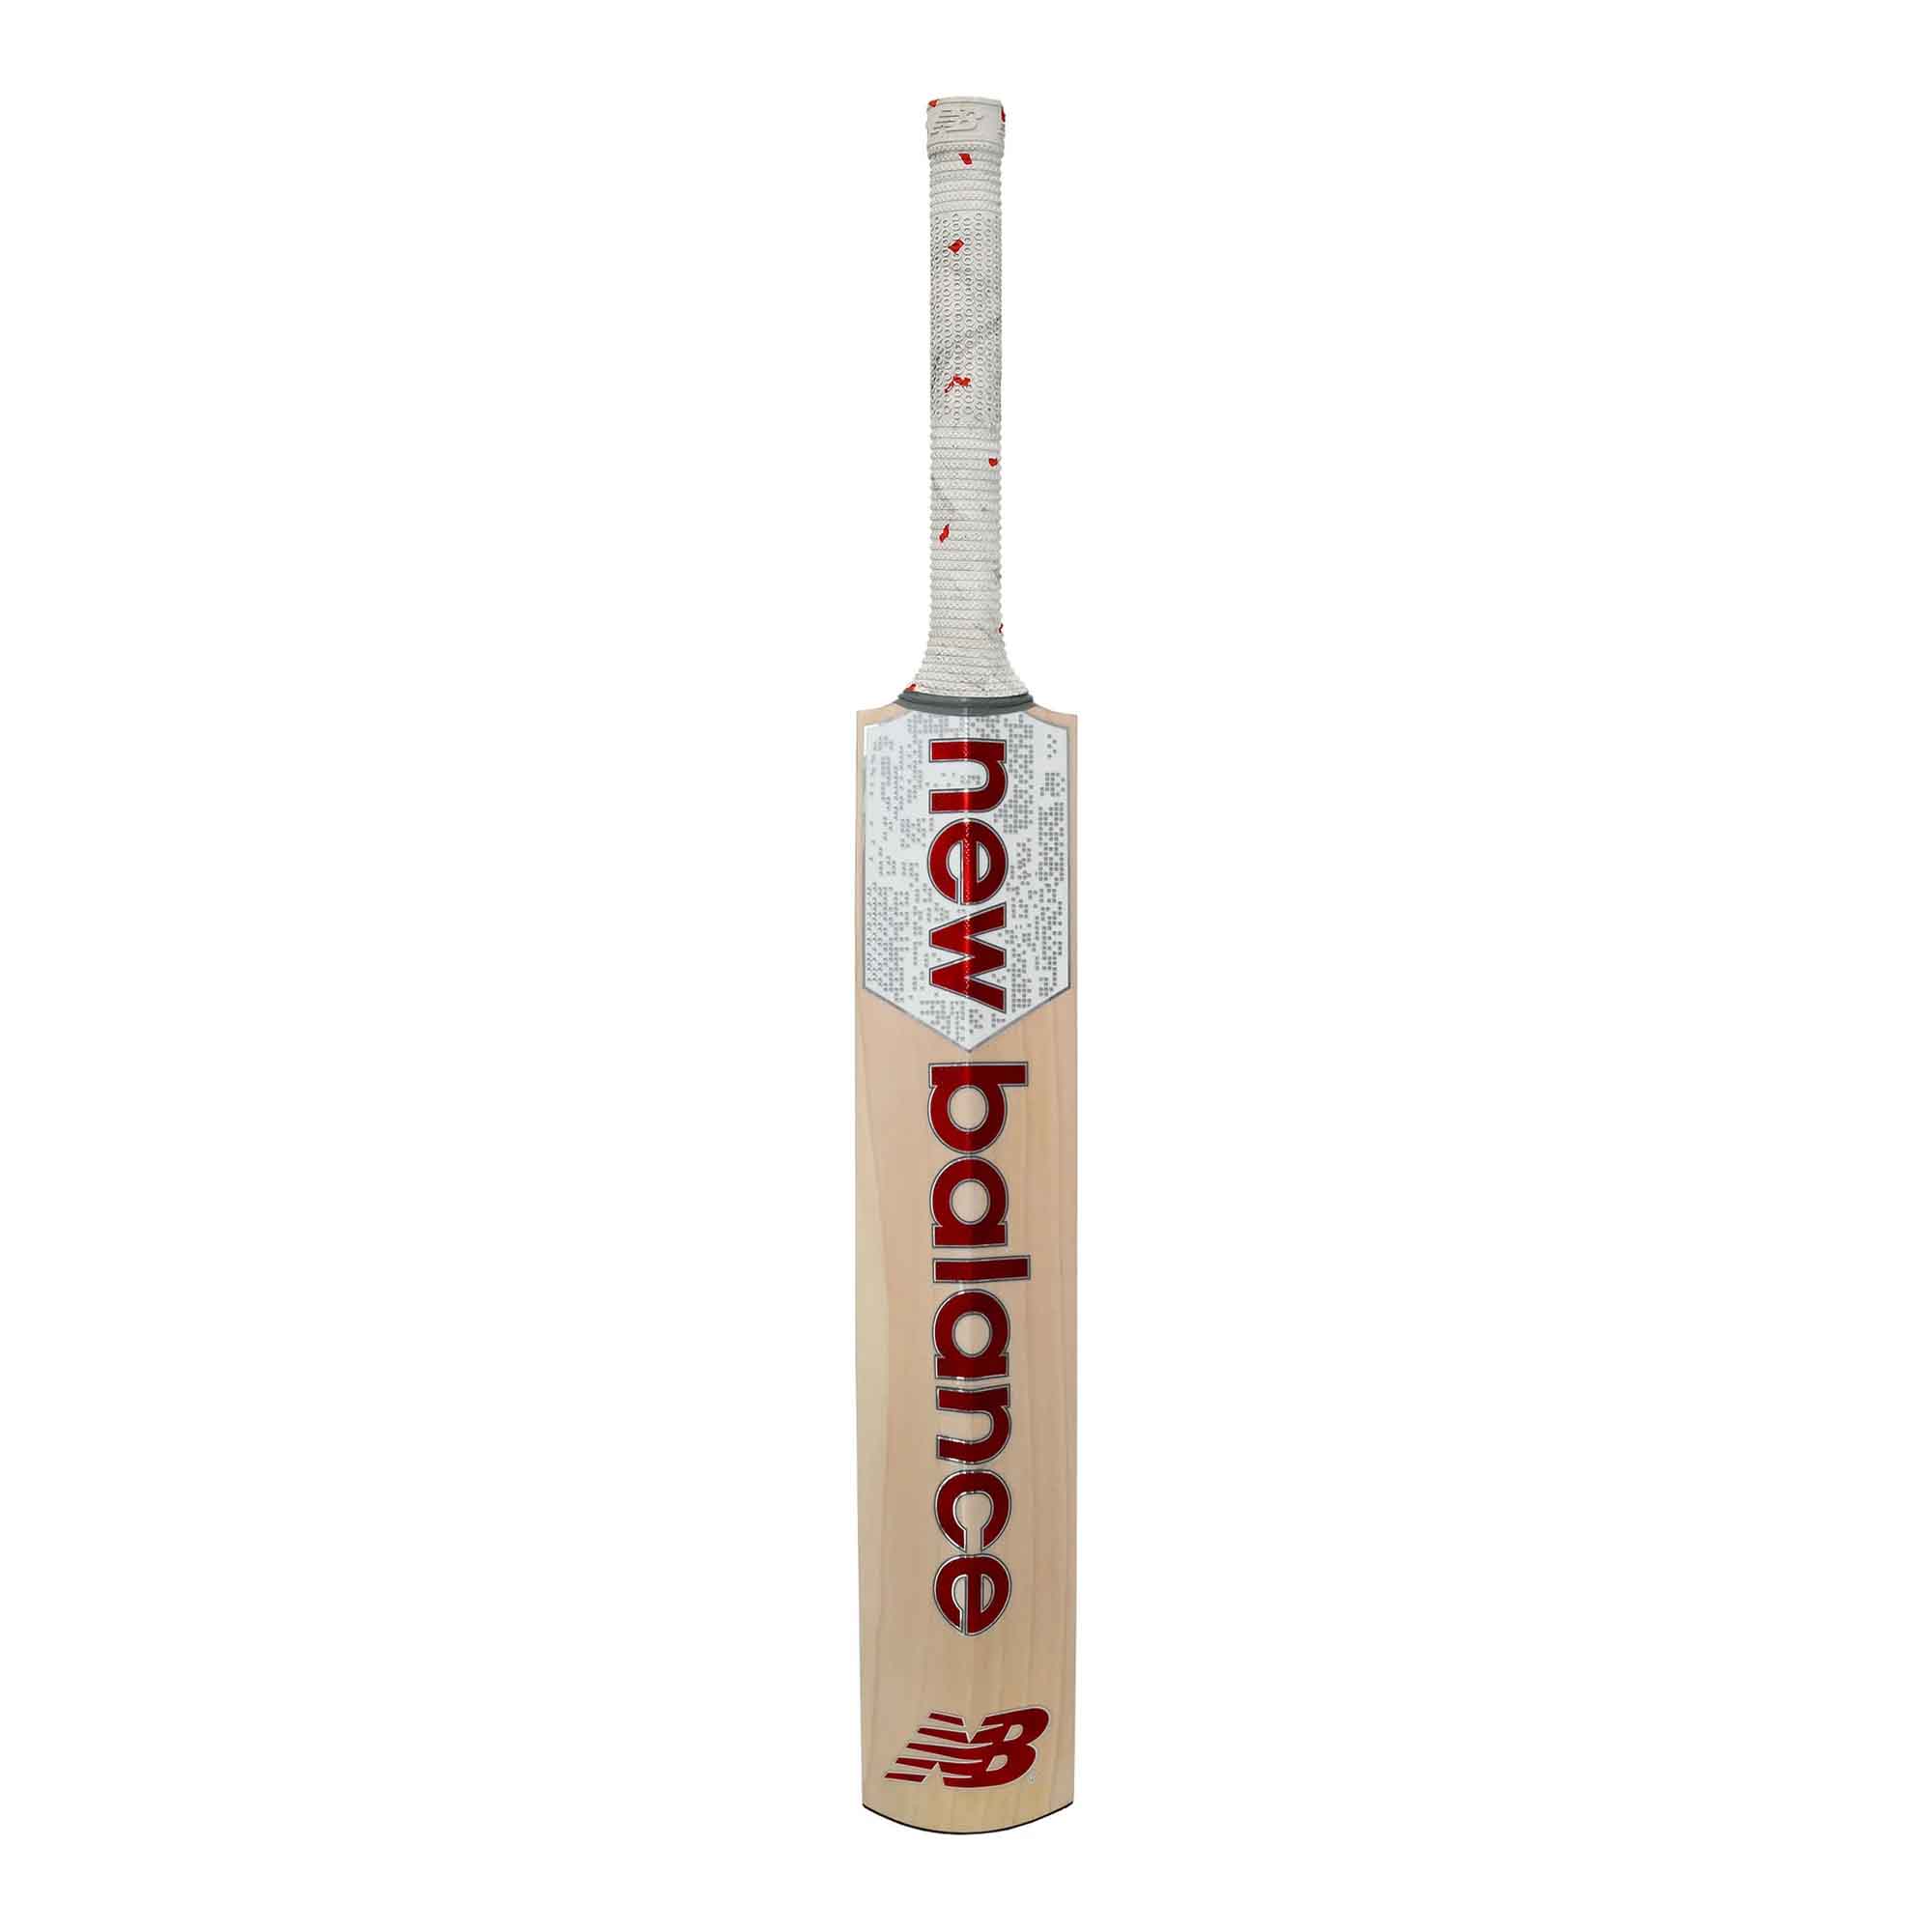 Shop Now! New Balance TC 660 Senior Cricket Bat